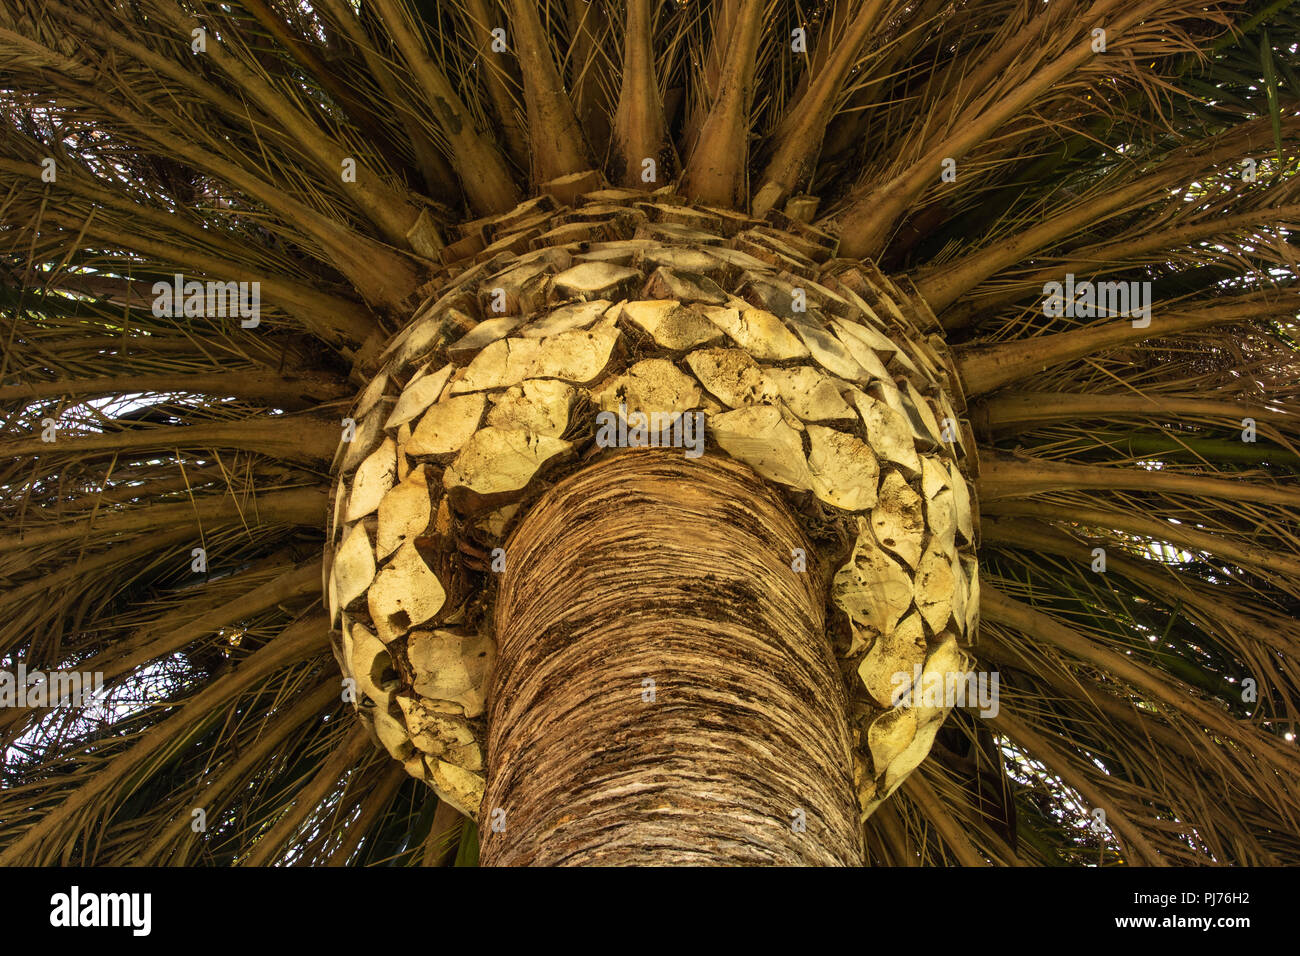 Palm Tree detail, bis suchen, abstrakte Element der Gestaltung der Stamm und die Zweige für backgrond oder Textur Stockfoto